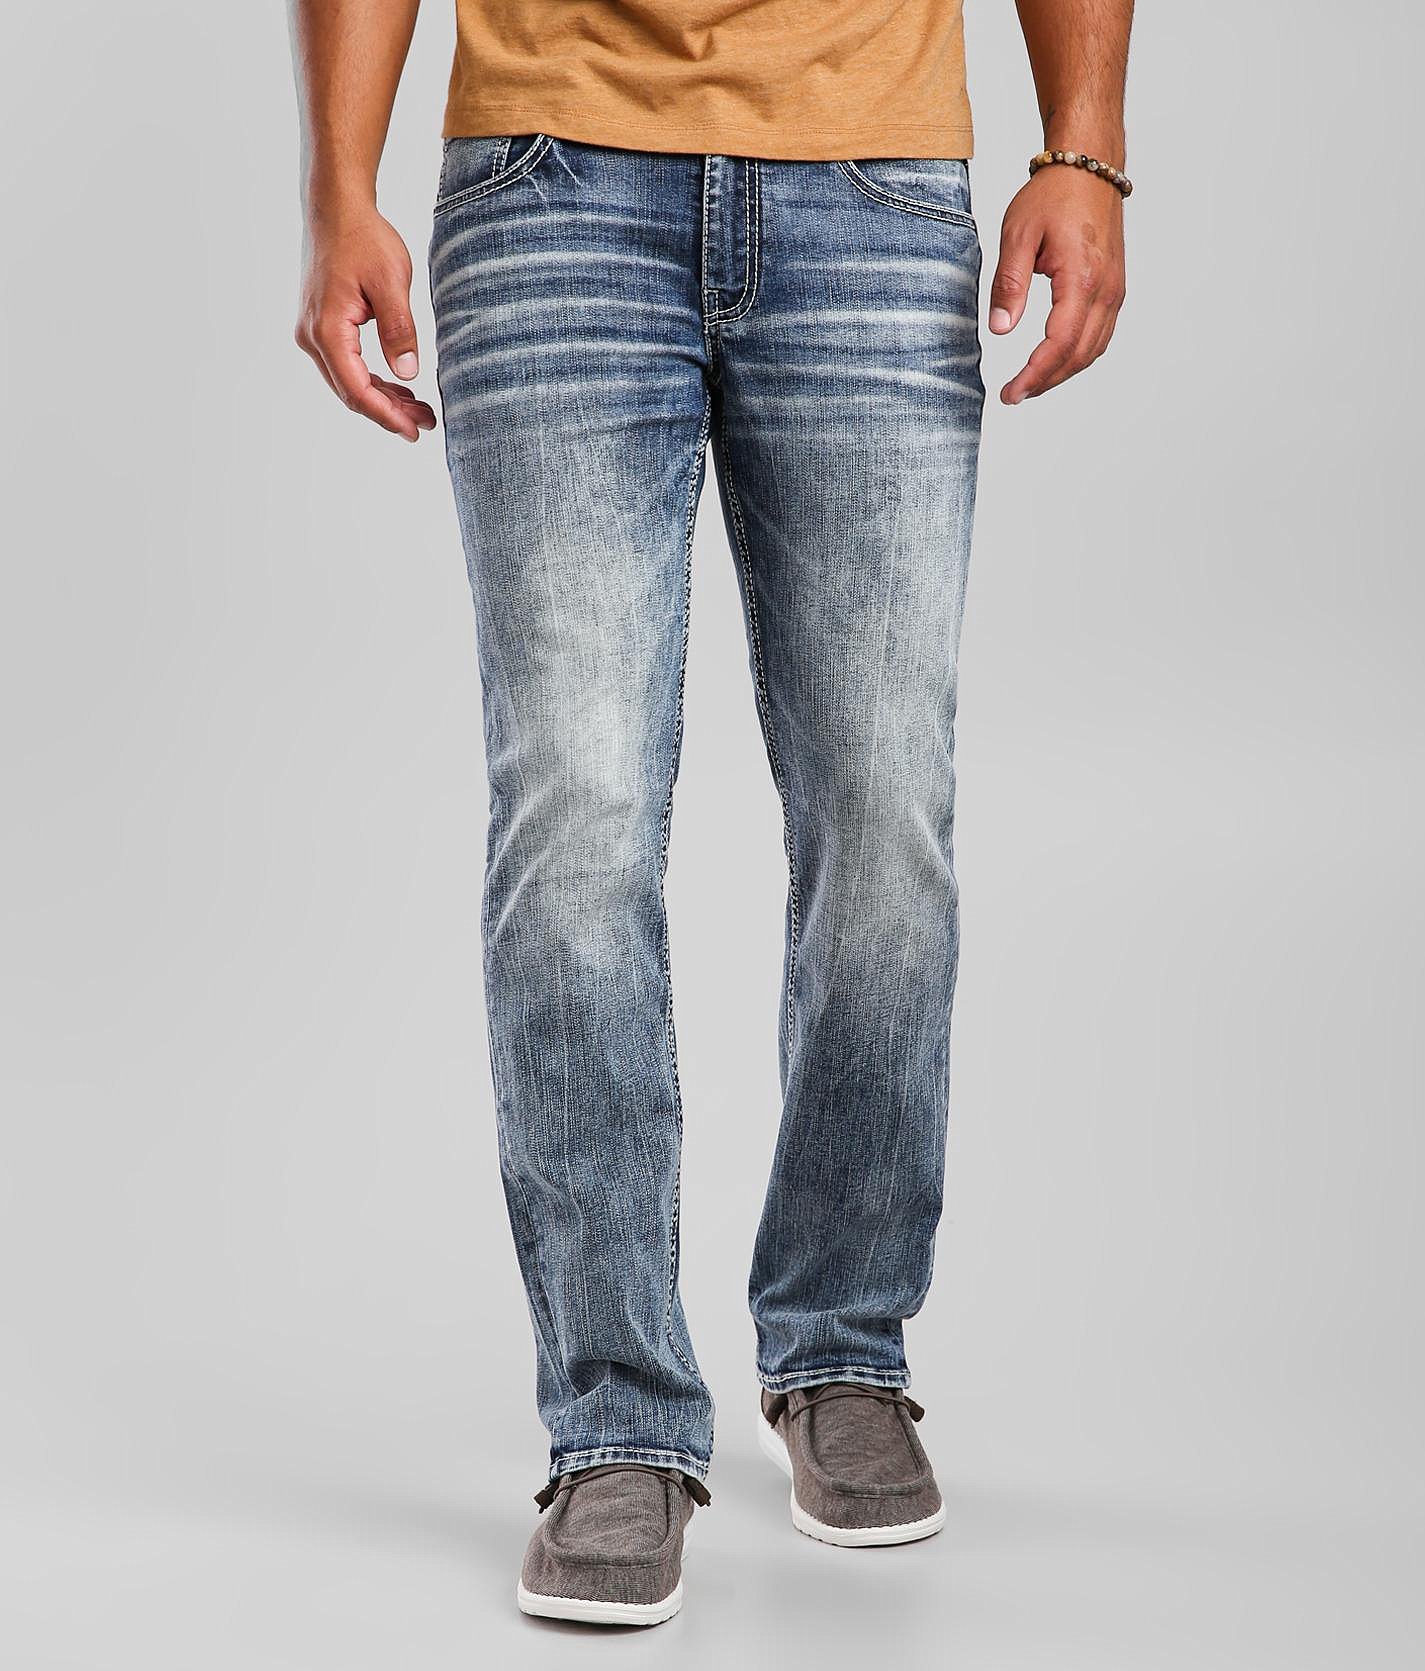 BKE Jake Straight Stretch Jean - Men's Jeans in Vantrump | Buckle